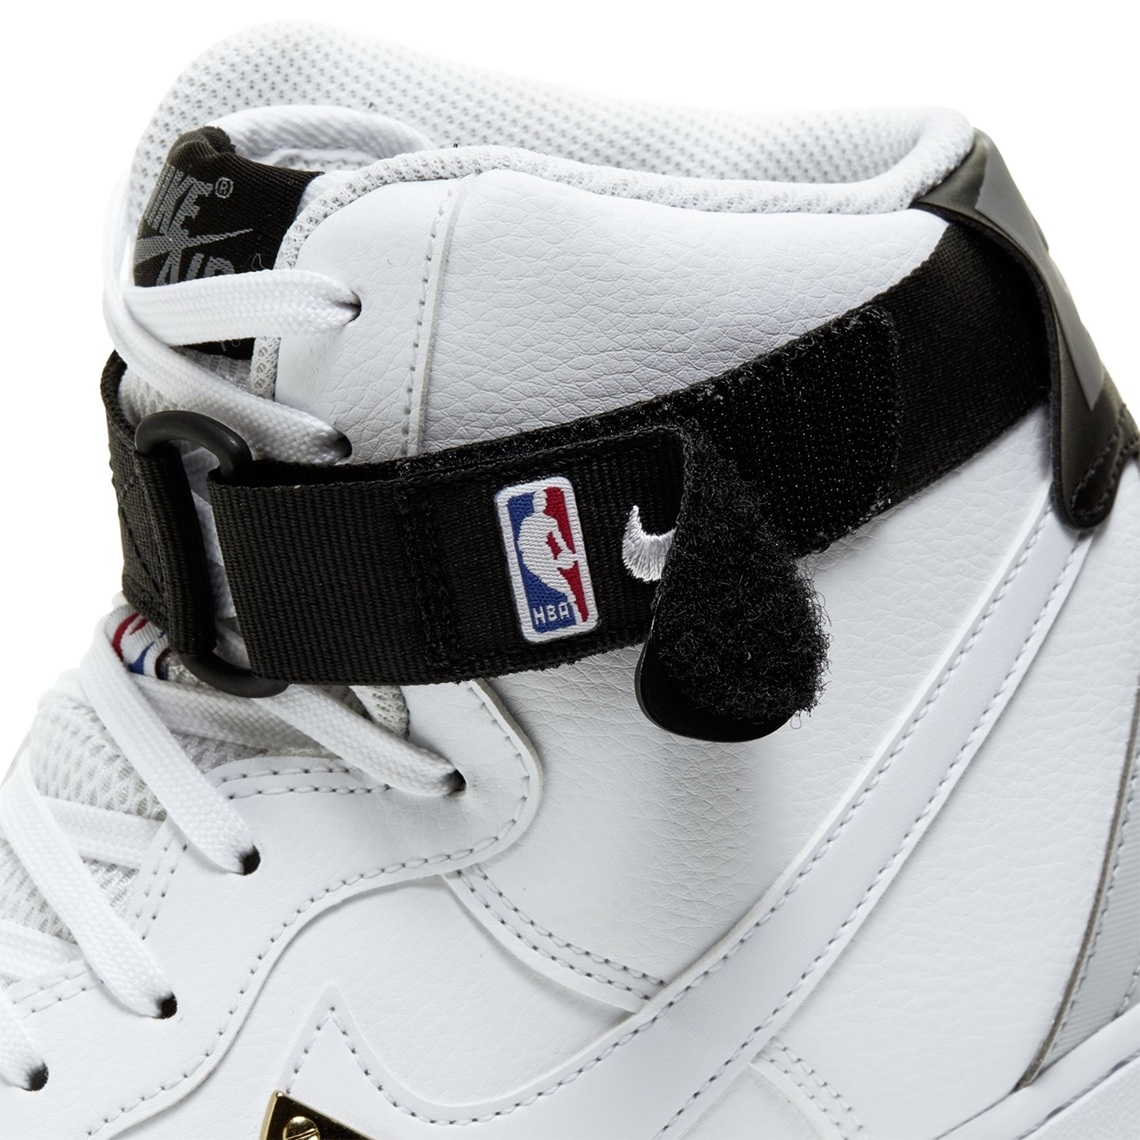 Nike Air Force 1 High NBA CT2306-100 White Gum